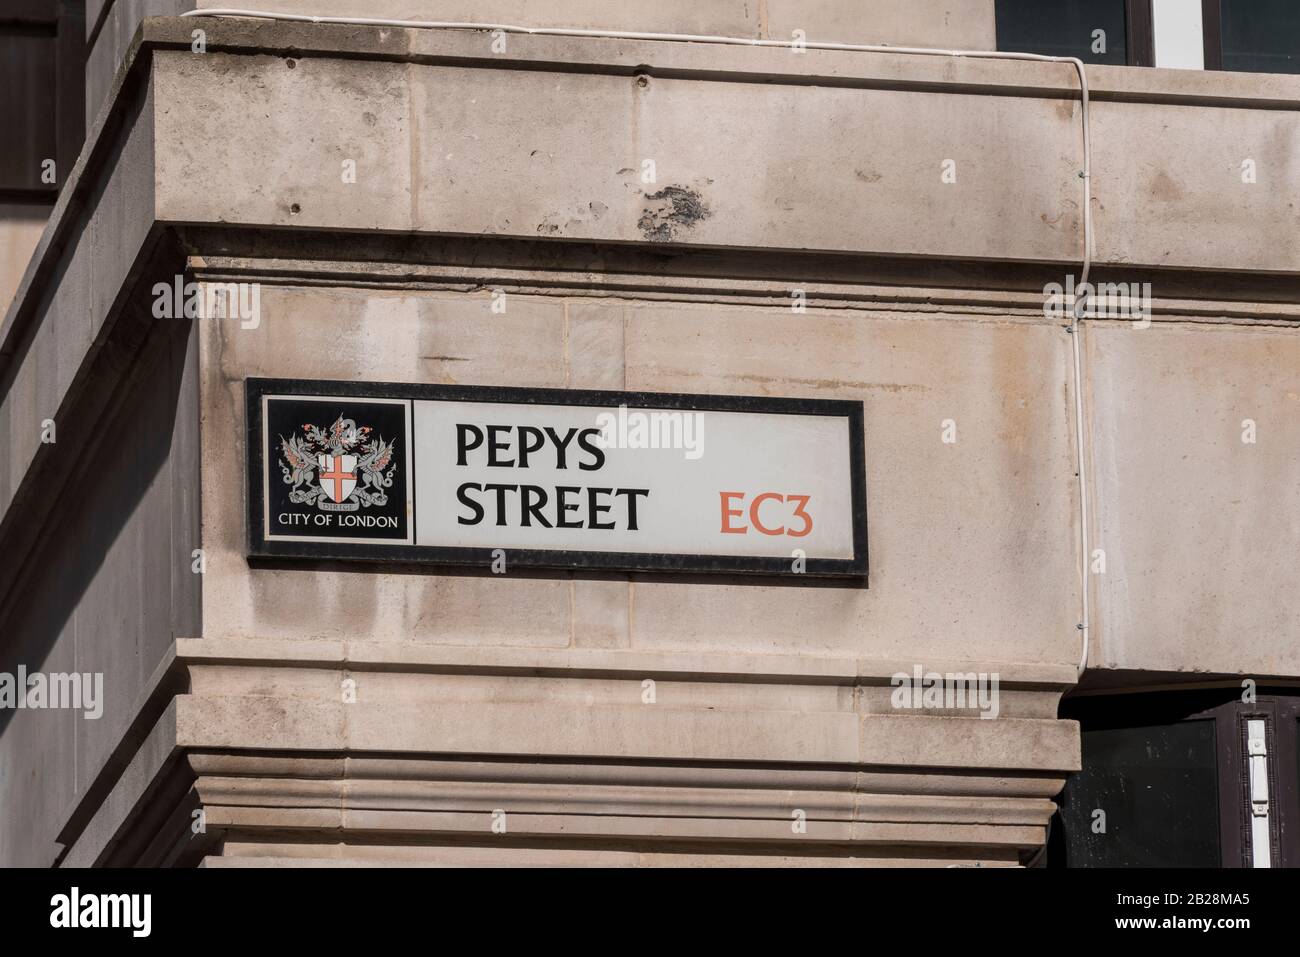 Pepys Street Road Sign in London EC3, Regno Unito. Città di Londra cresta. Vicino alla casa del diarista Samuel Pepys. City of London stemma stemma Foto Stock